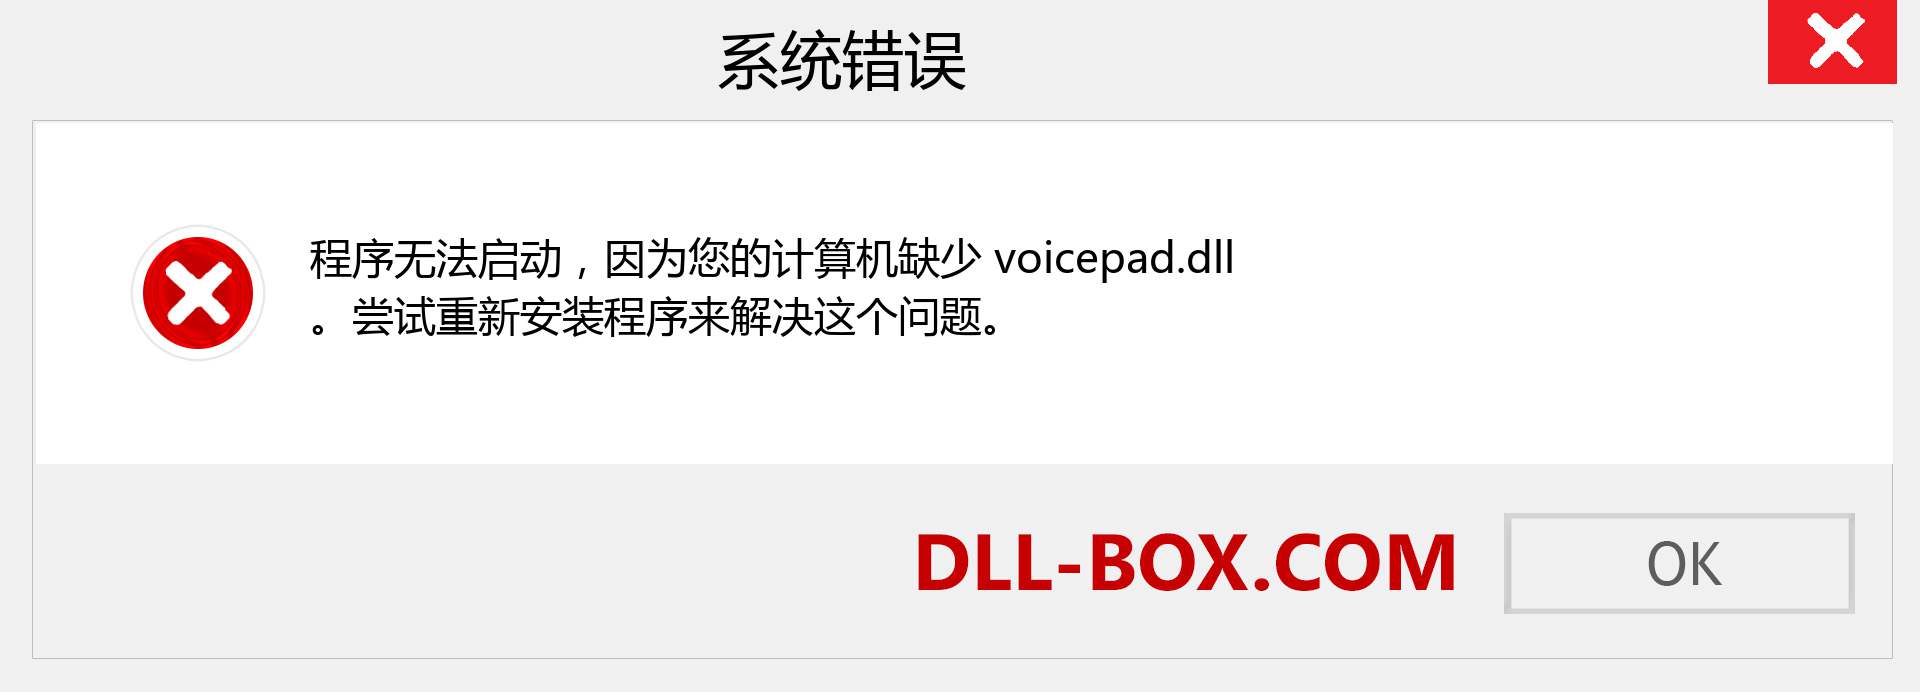 voicepad.dll 文件丢失？。 适用于 Windows 7、8、10 的下载 - 修复 Windows、照片、图像上的 voicepad dll 丢失错误